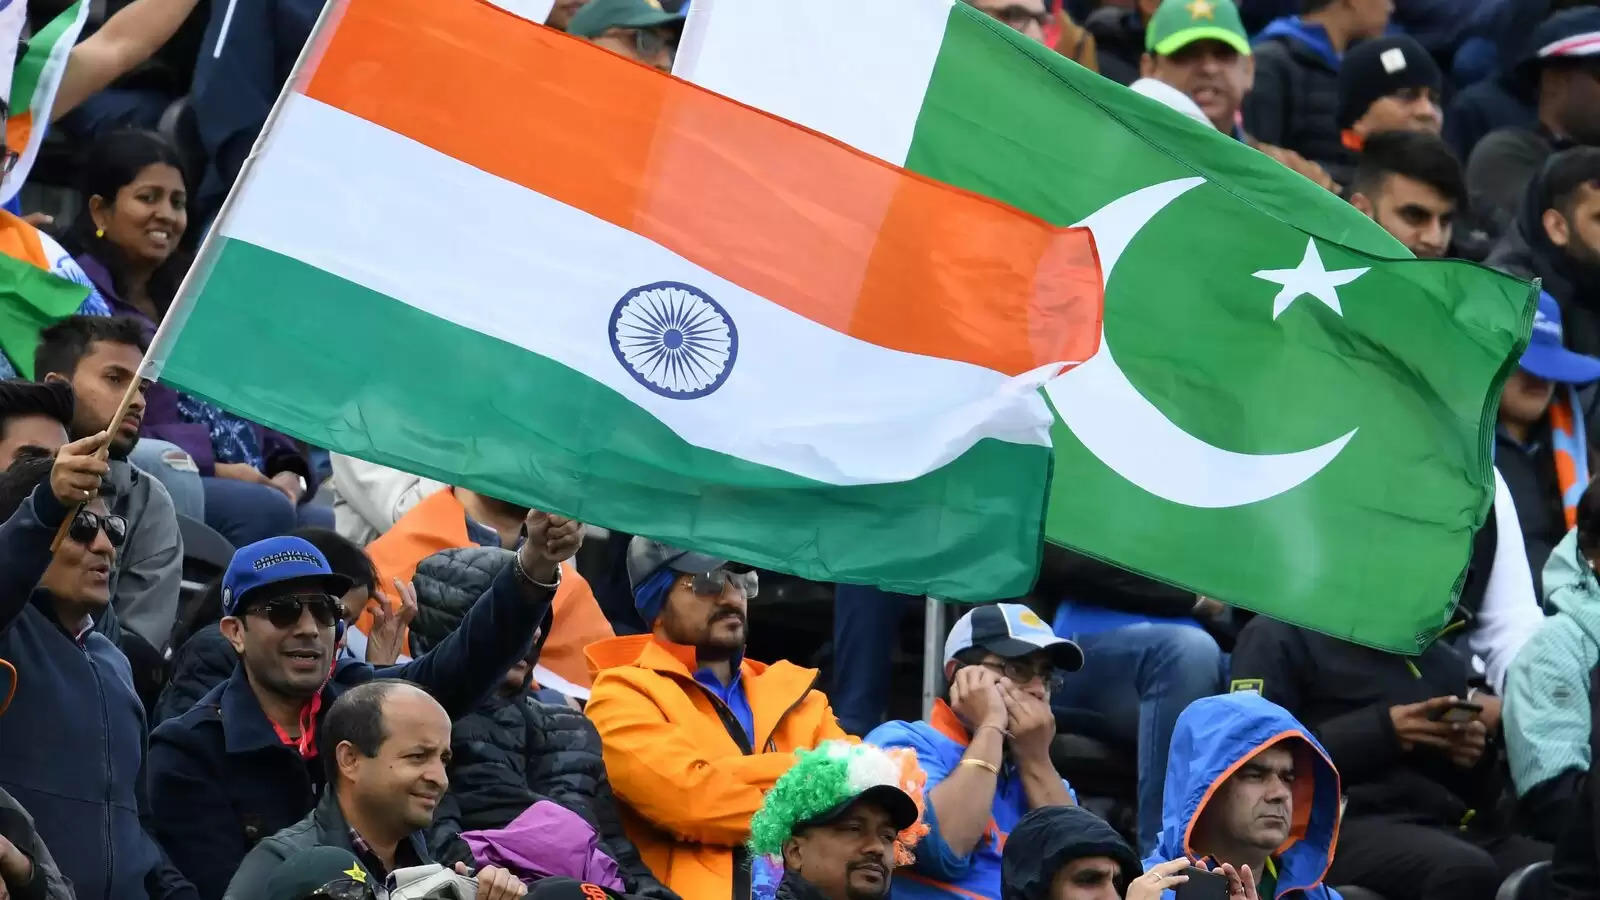 India vs Pakistan fans